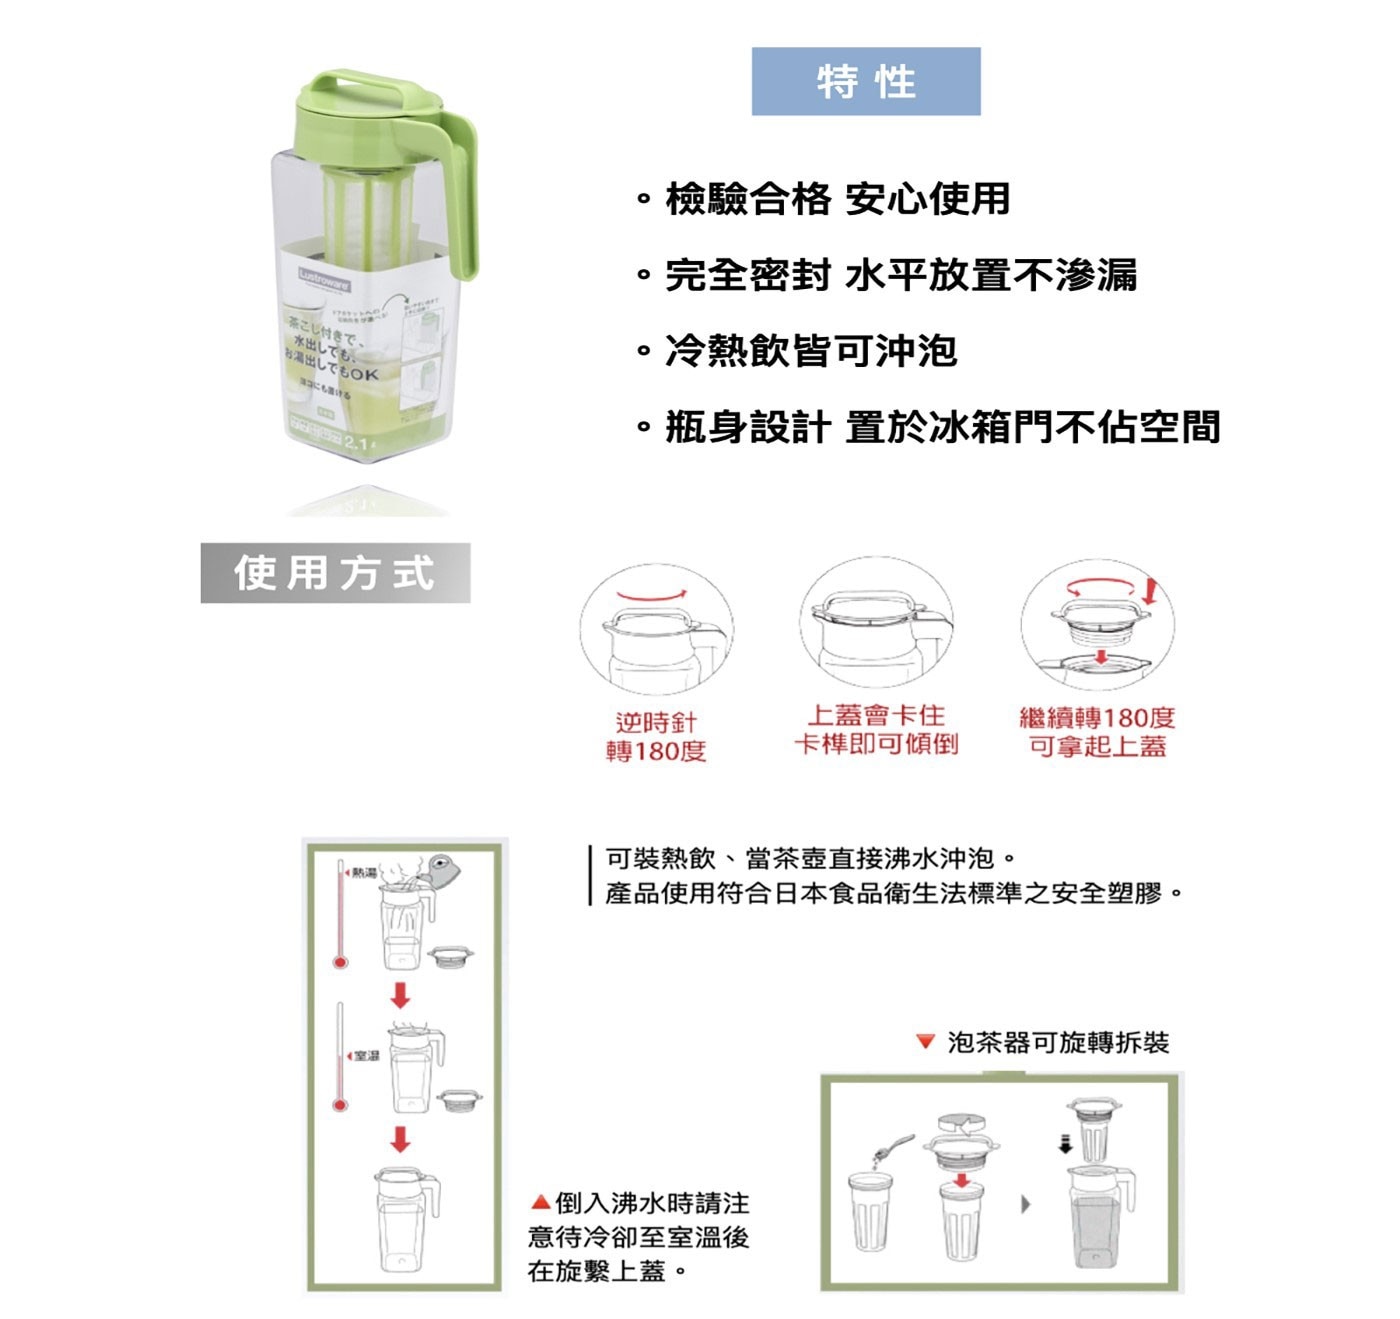 Lustroware 日本岩崎方形耐熱冷/熱水壺2.1L(附濾網), 採用AS環保樹脂原料,環保無毒,密封性佳,平放也OK,日本原裝進口。